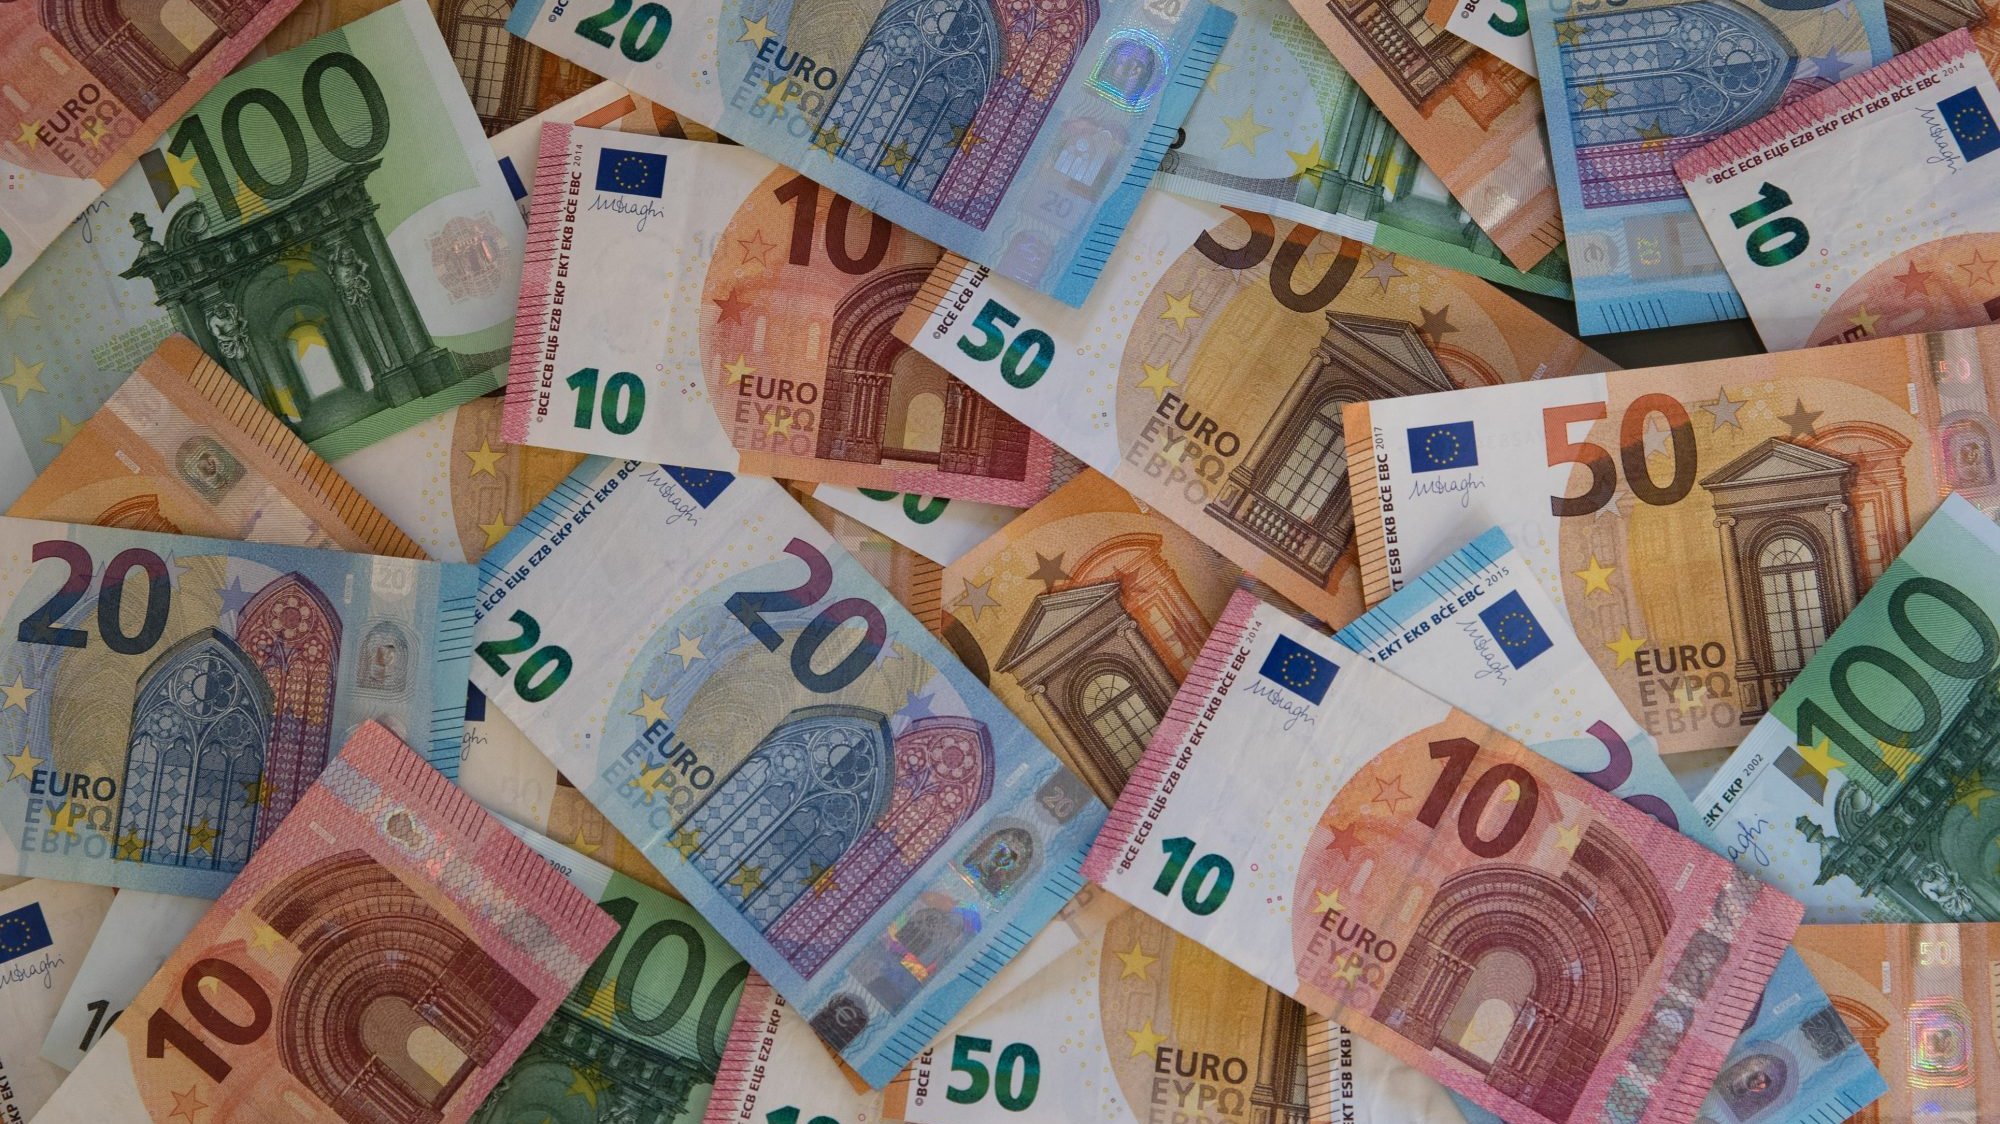 O governo garantiu que o aumento de 10 euros &quot;garante ganhos reais de poder de compra&quot;. As reformas superiores a 658 euros continuam congeladas